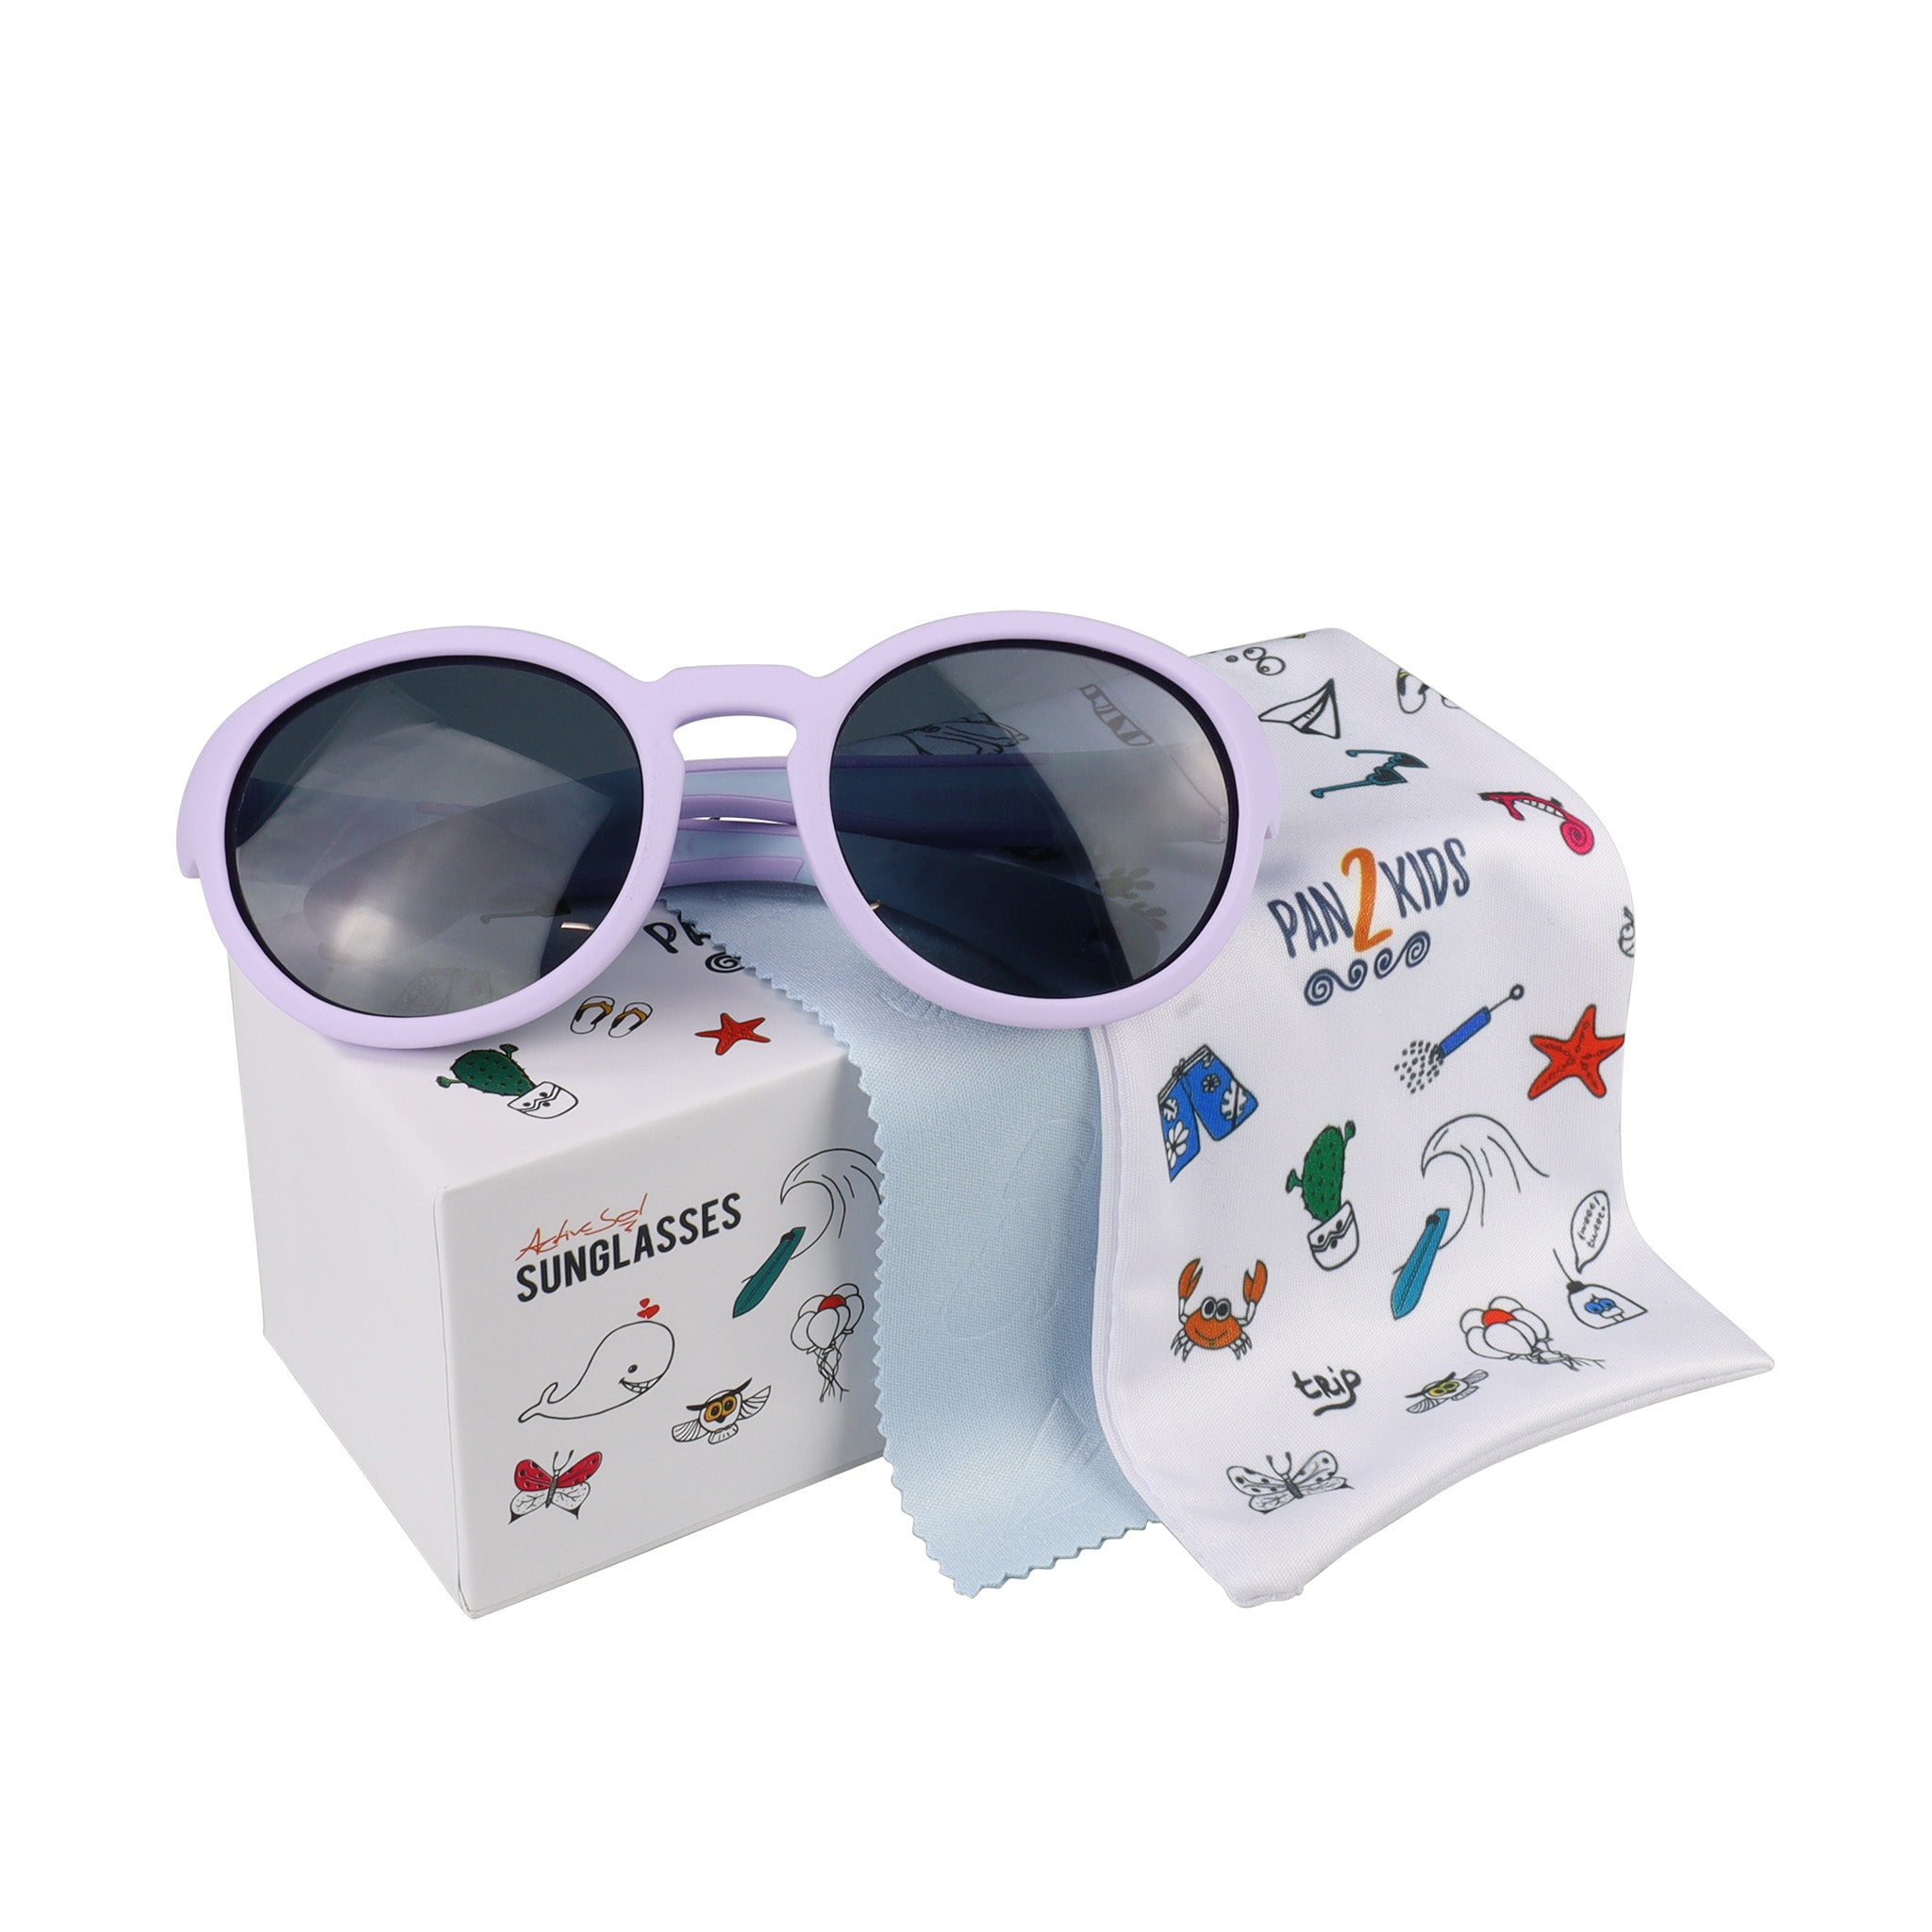 Pan2Kids Kinder-Sonnenbrille, 2-5 Jahre , Digital Lavender